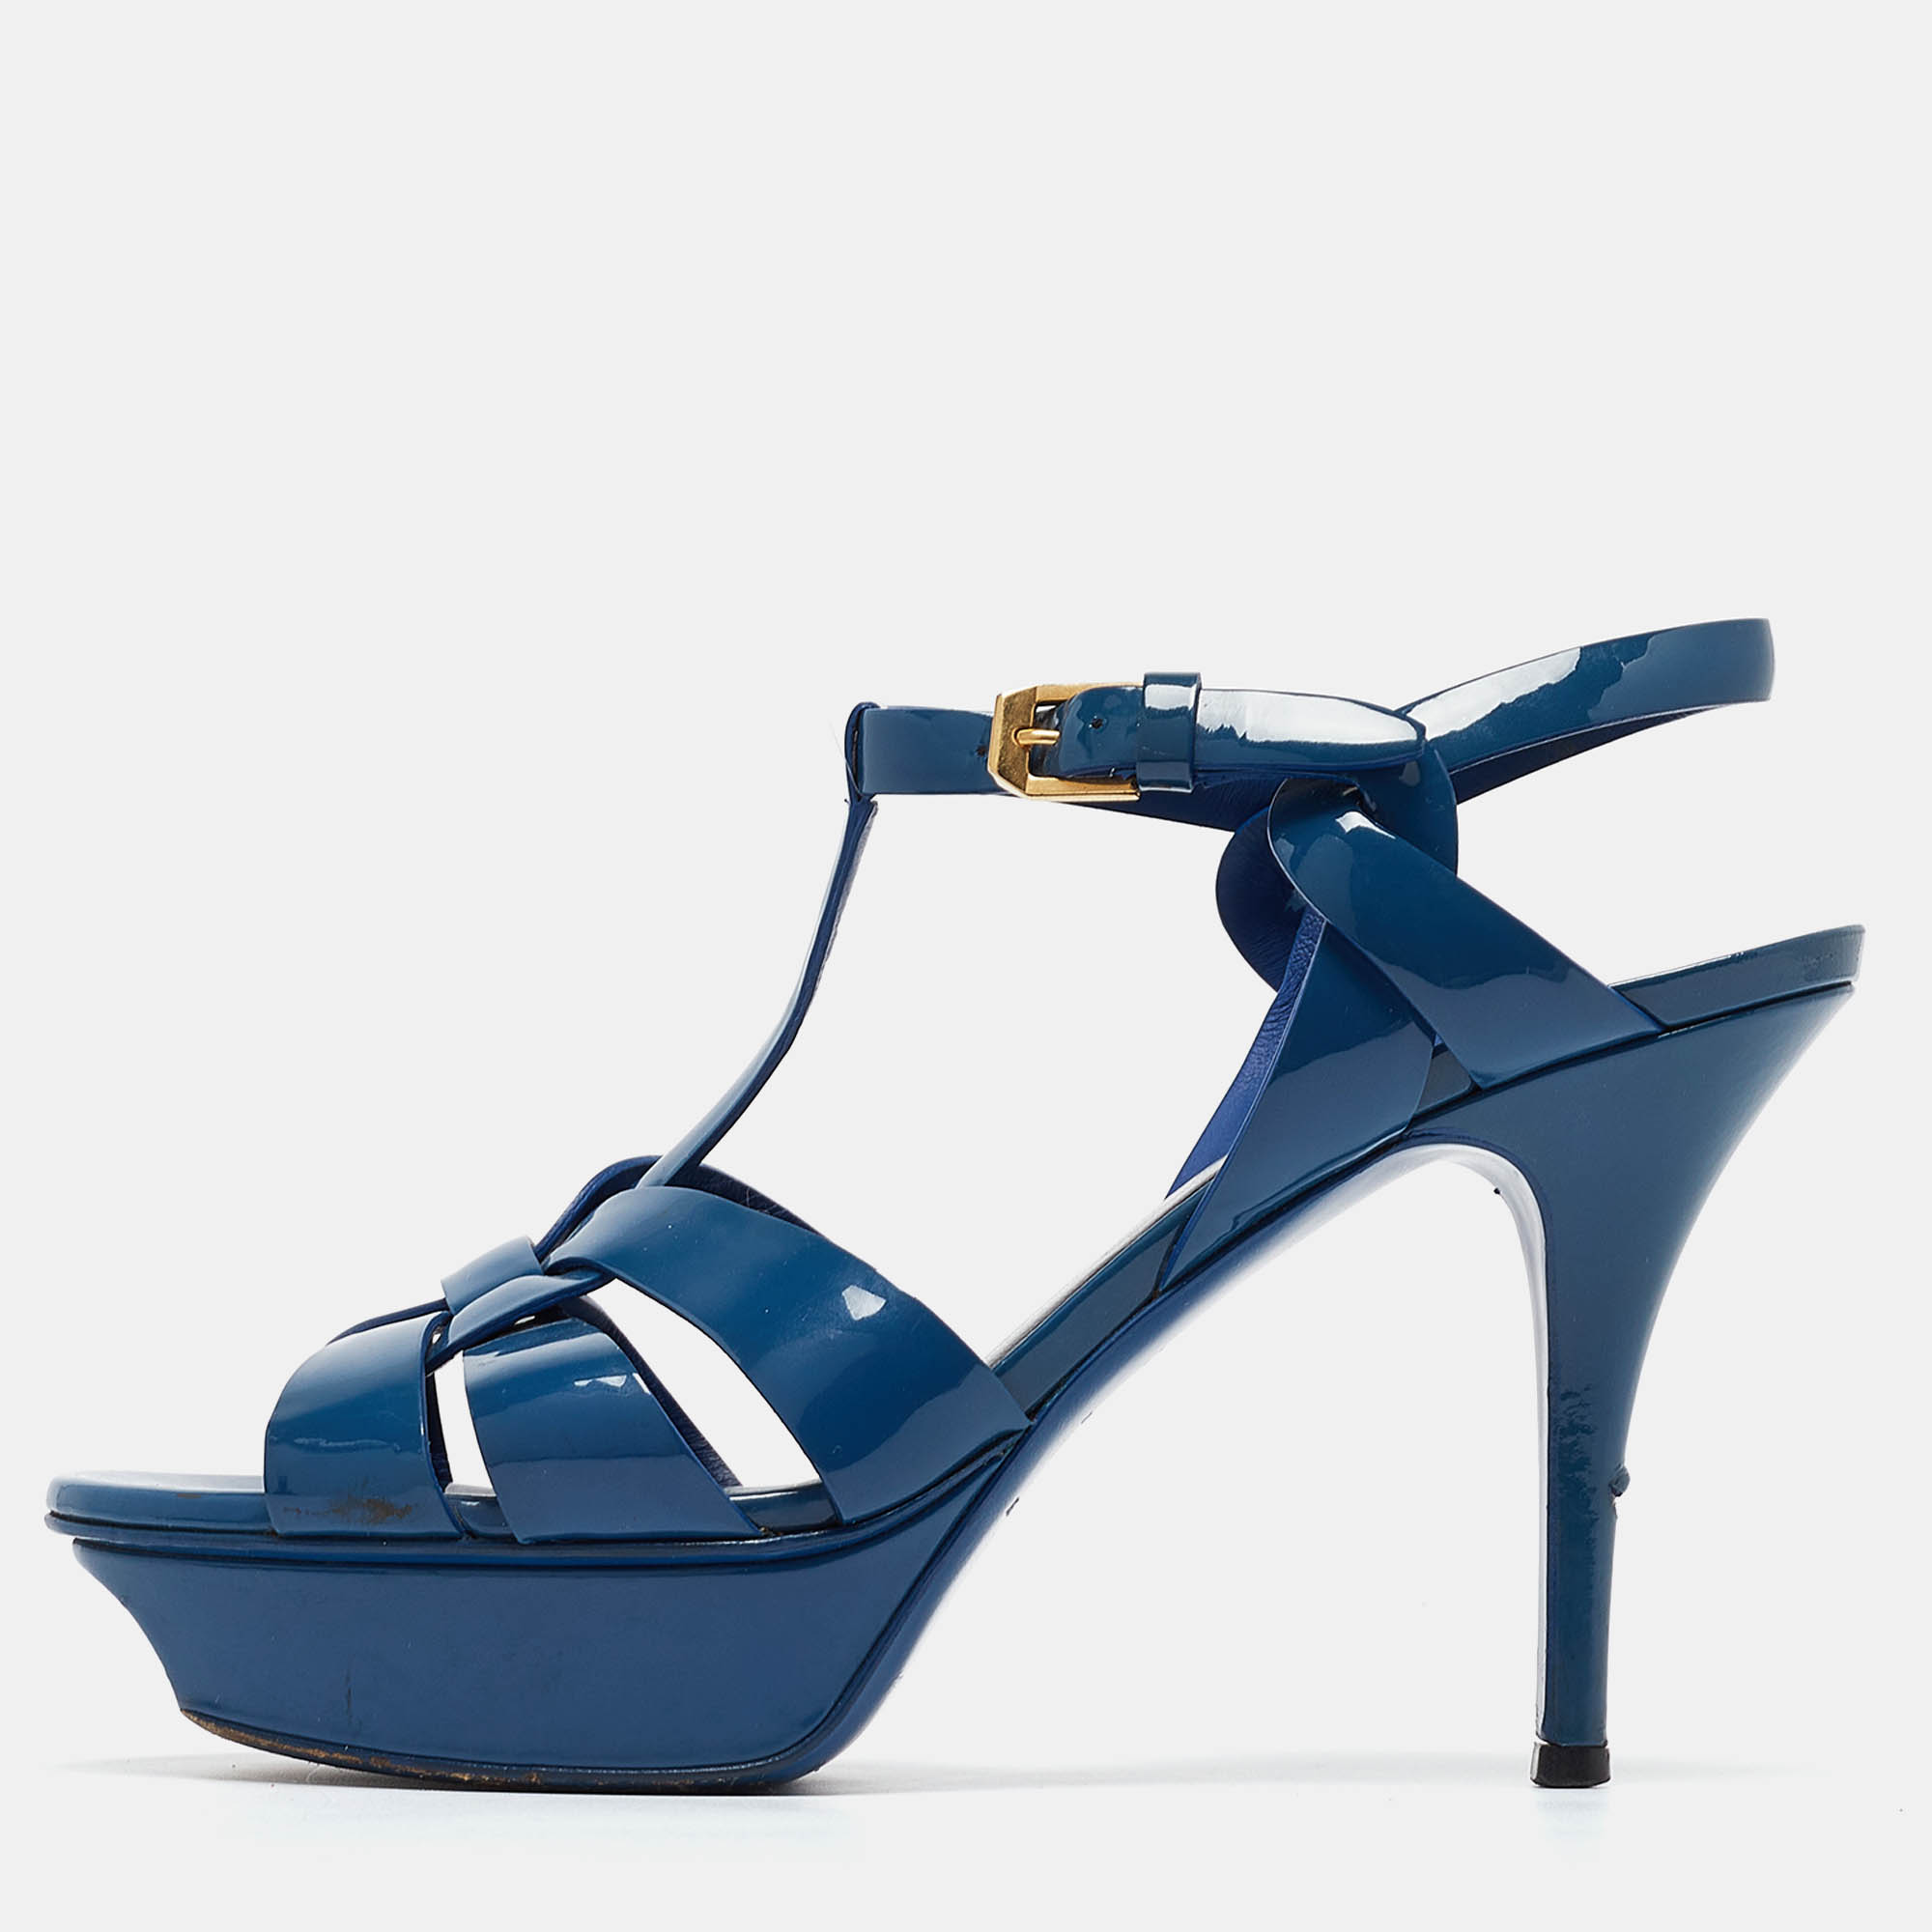 Yves saint laurent blue patent tribute sandals size 38